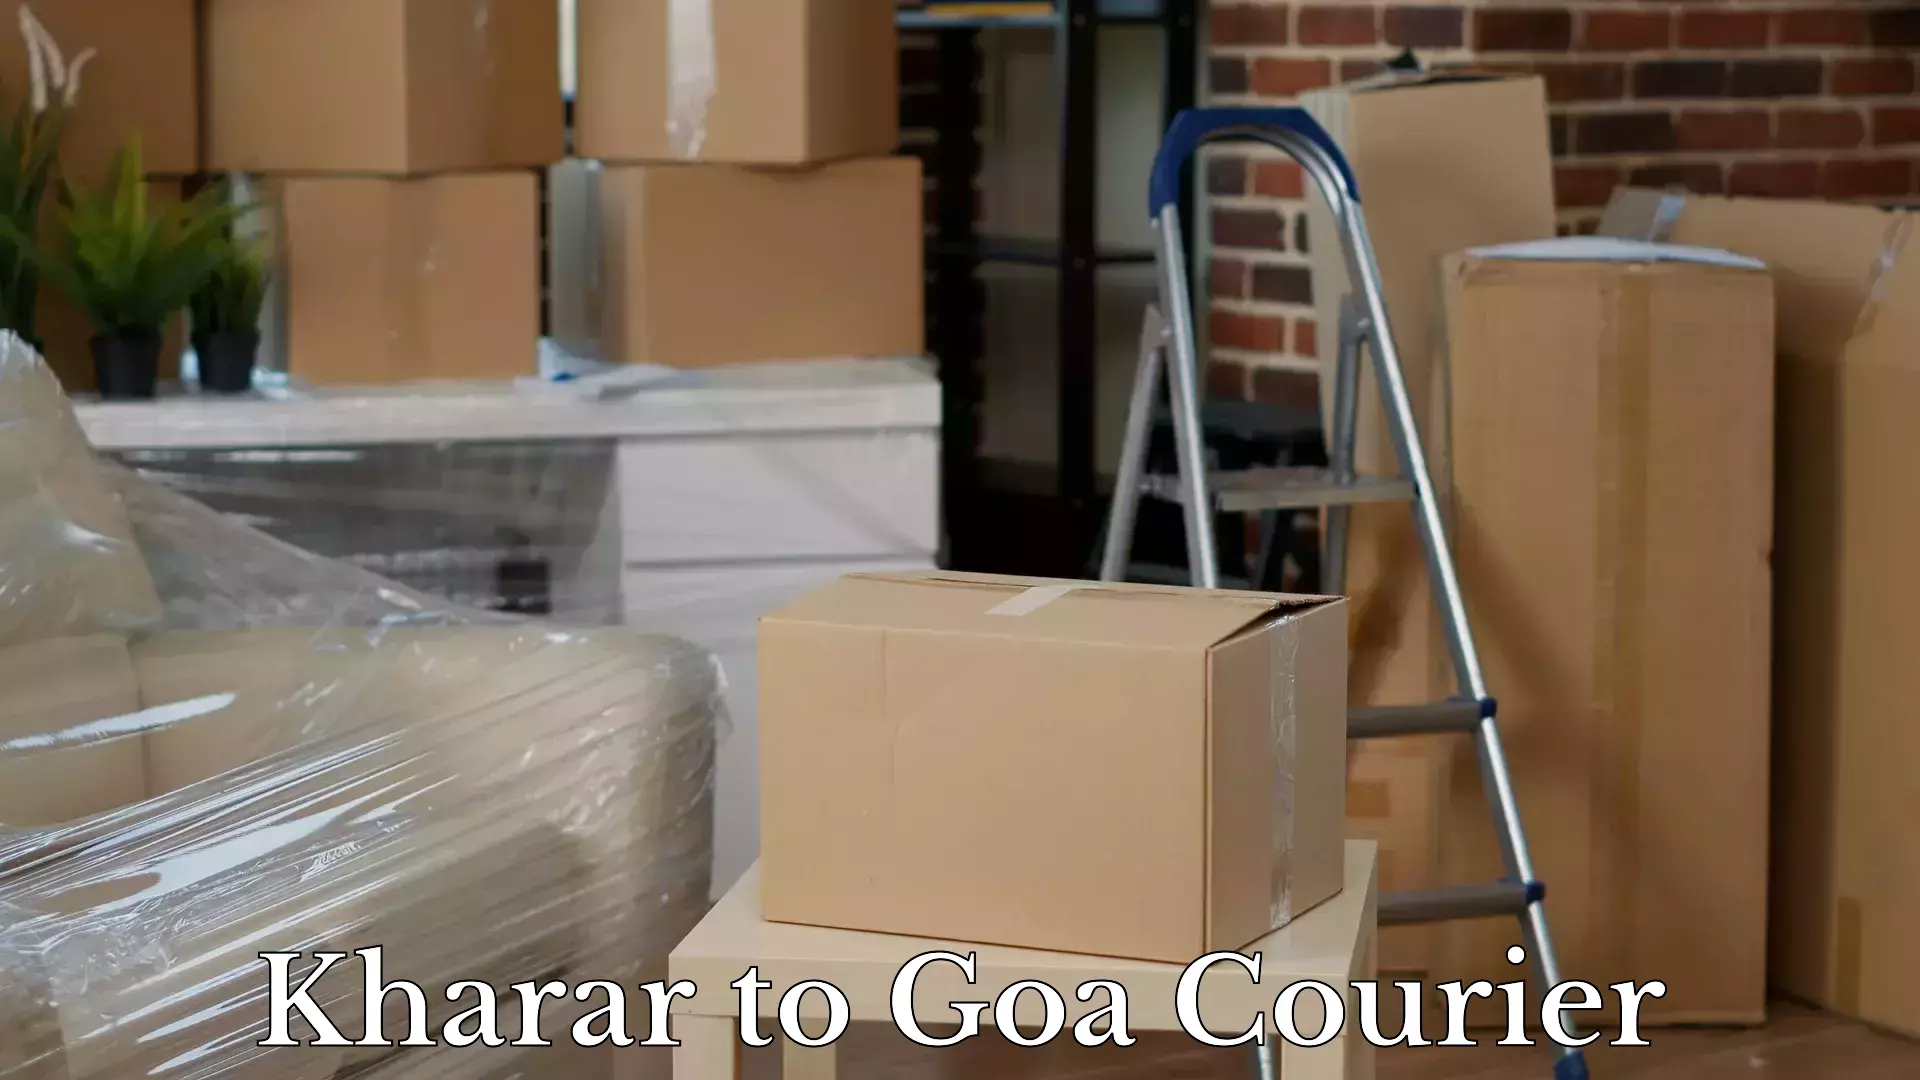 Automated luggage transport Kharar to Margao